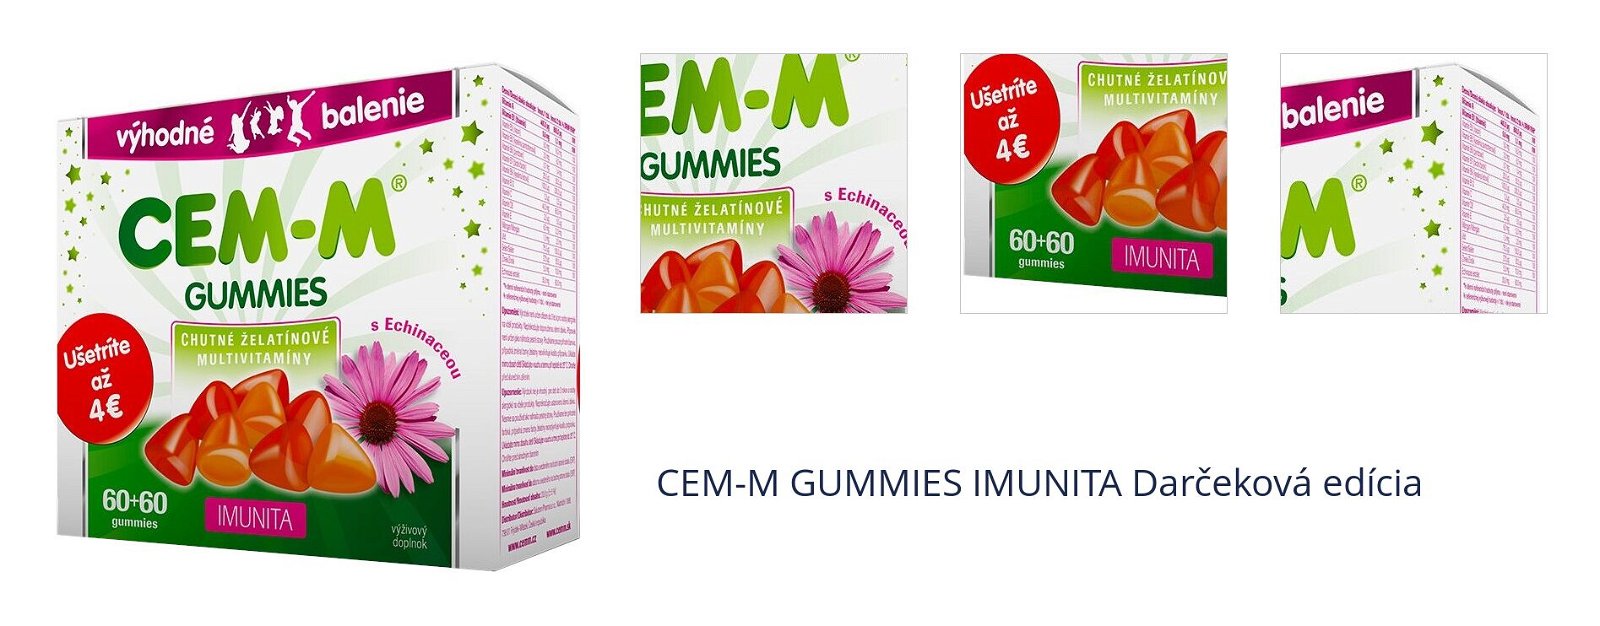 CEM-M GUMMIES IMUNITA Darčeková edícia 1